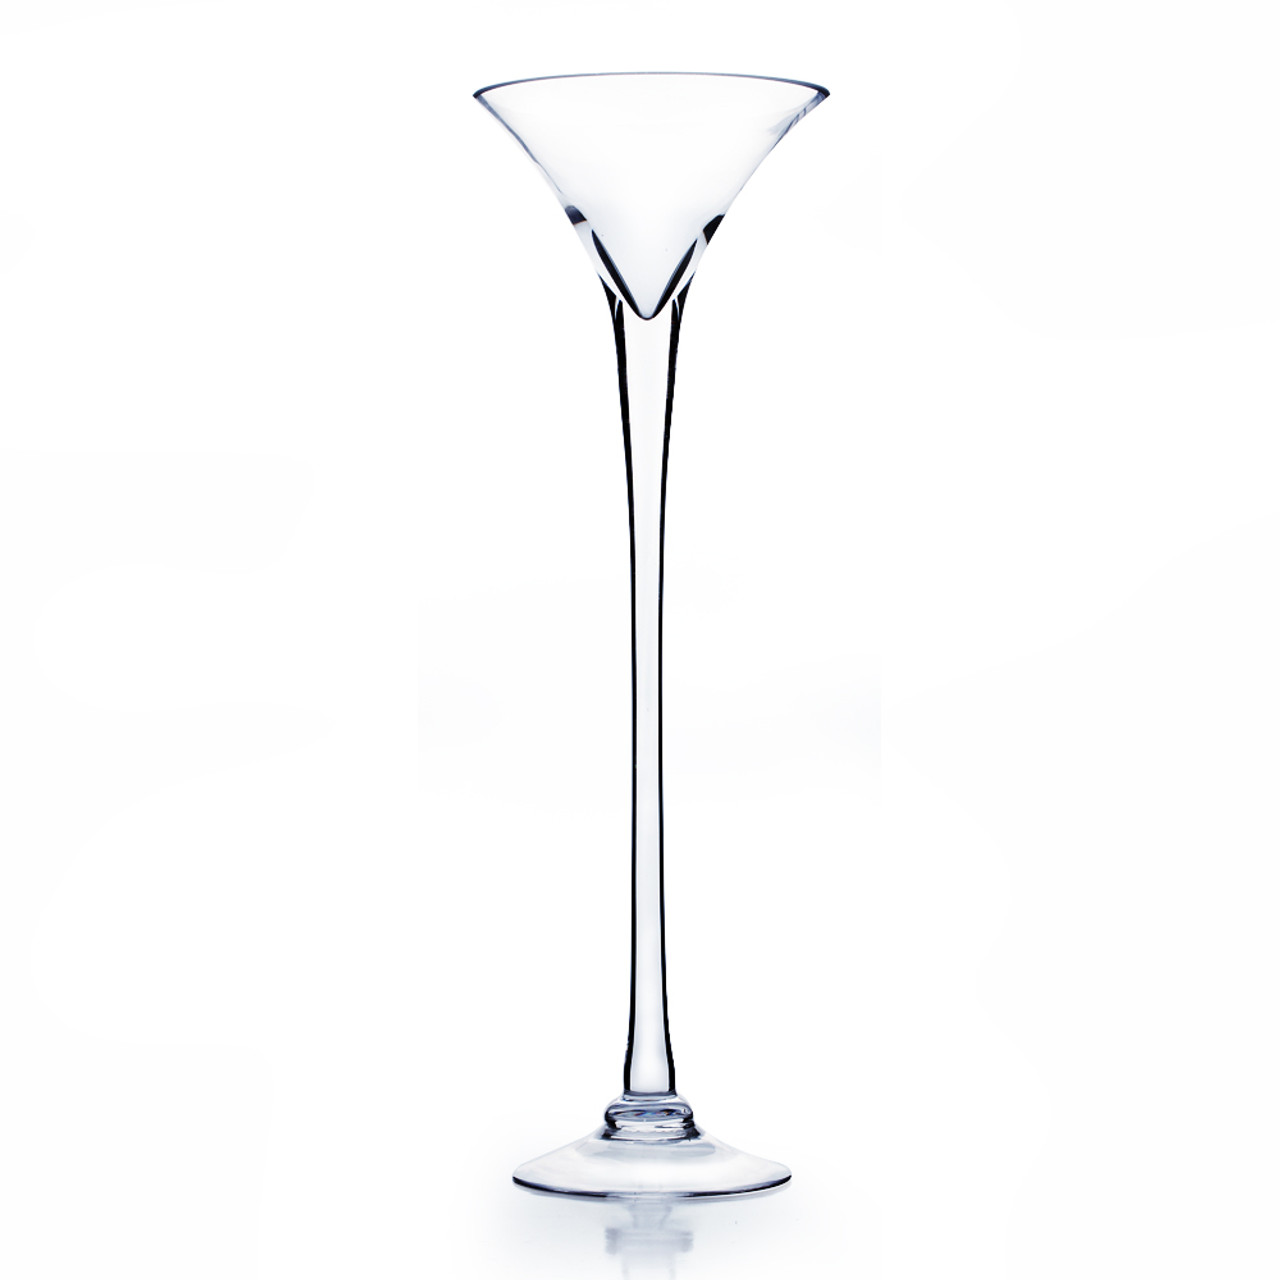 VMG0823 - Martini Glass Vase - 8x 23x 6